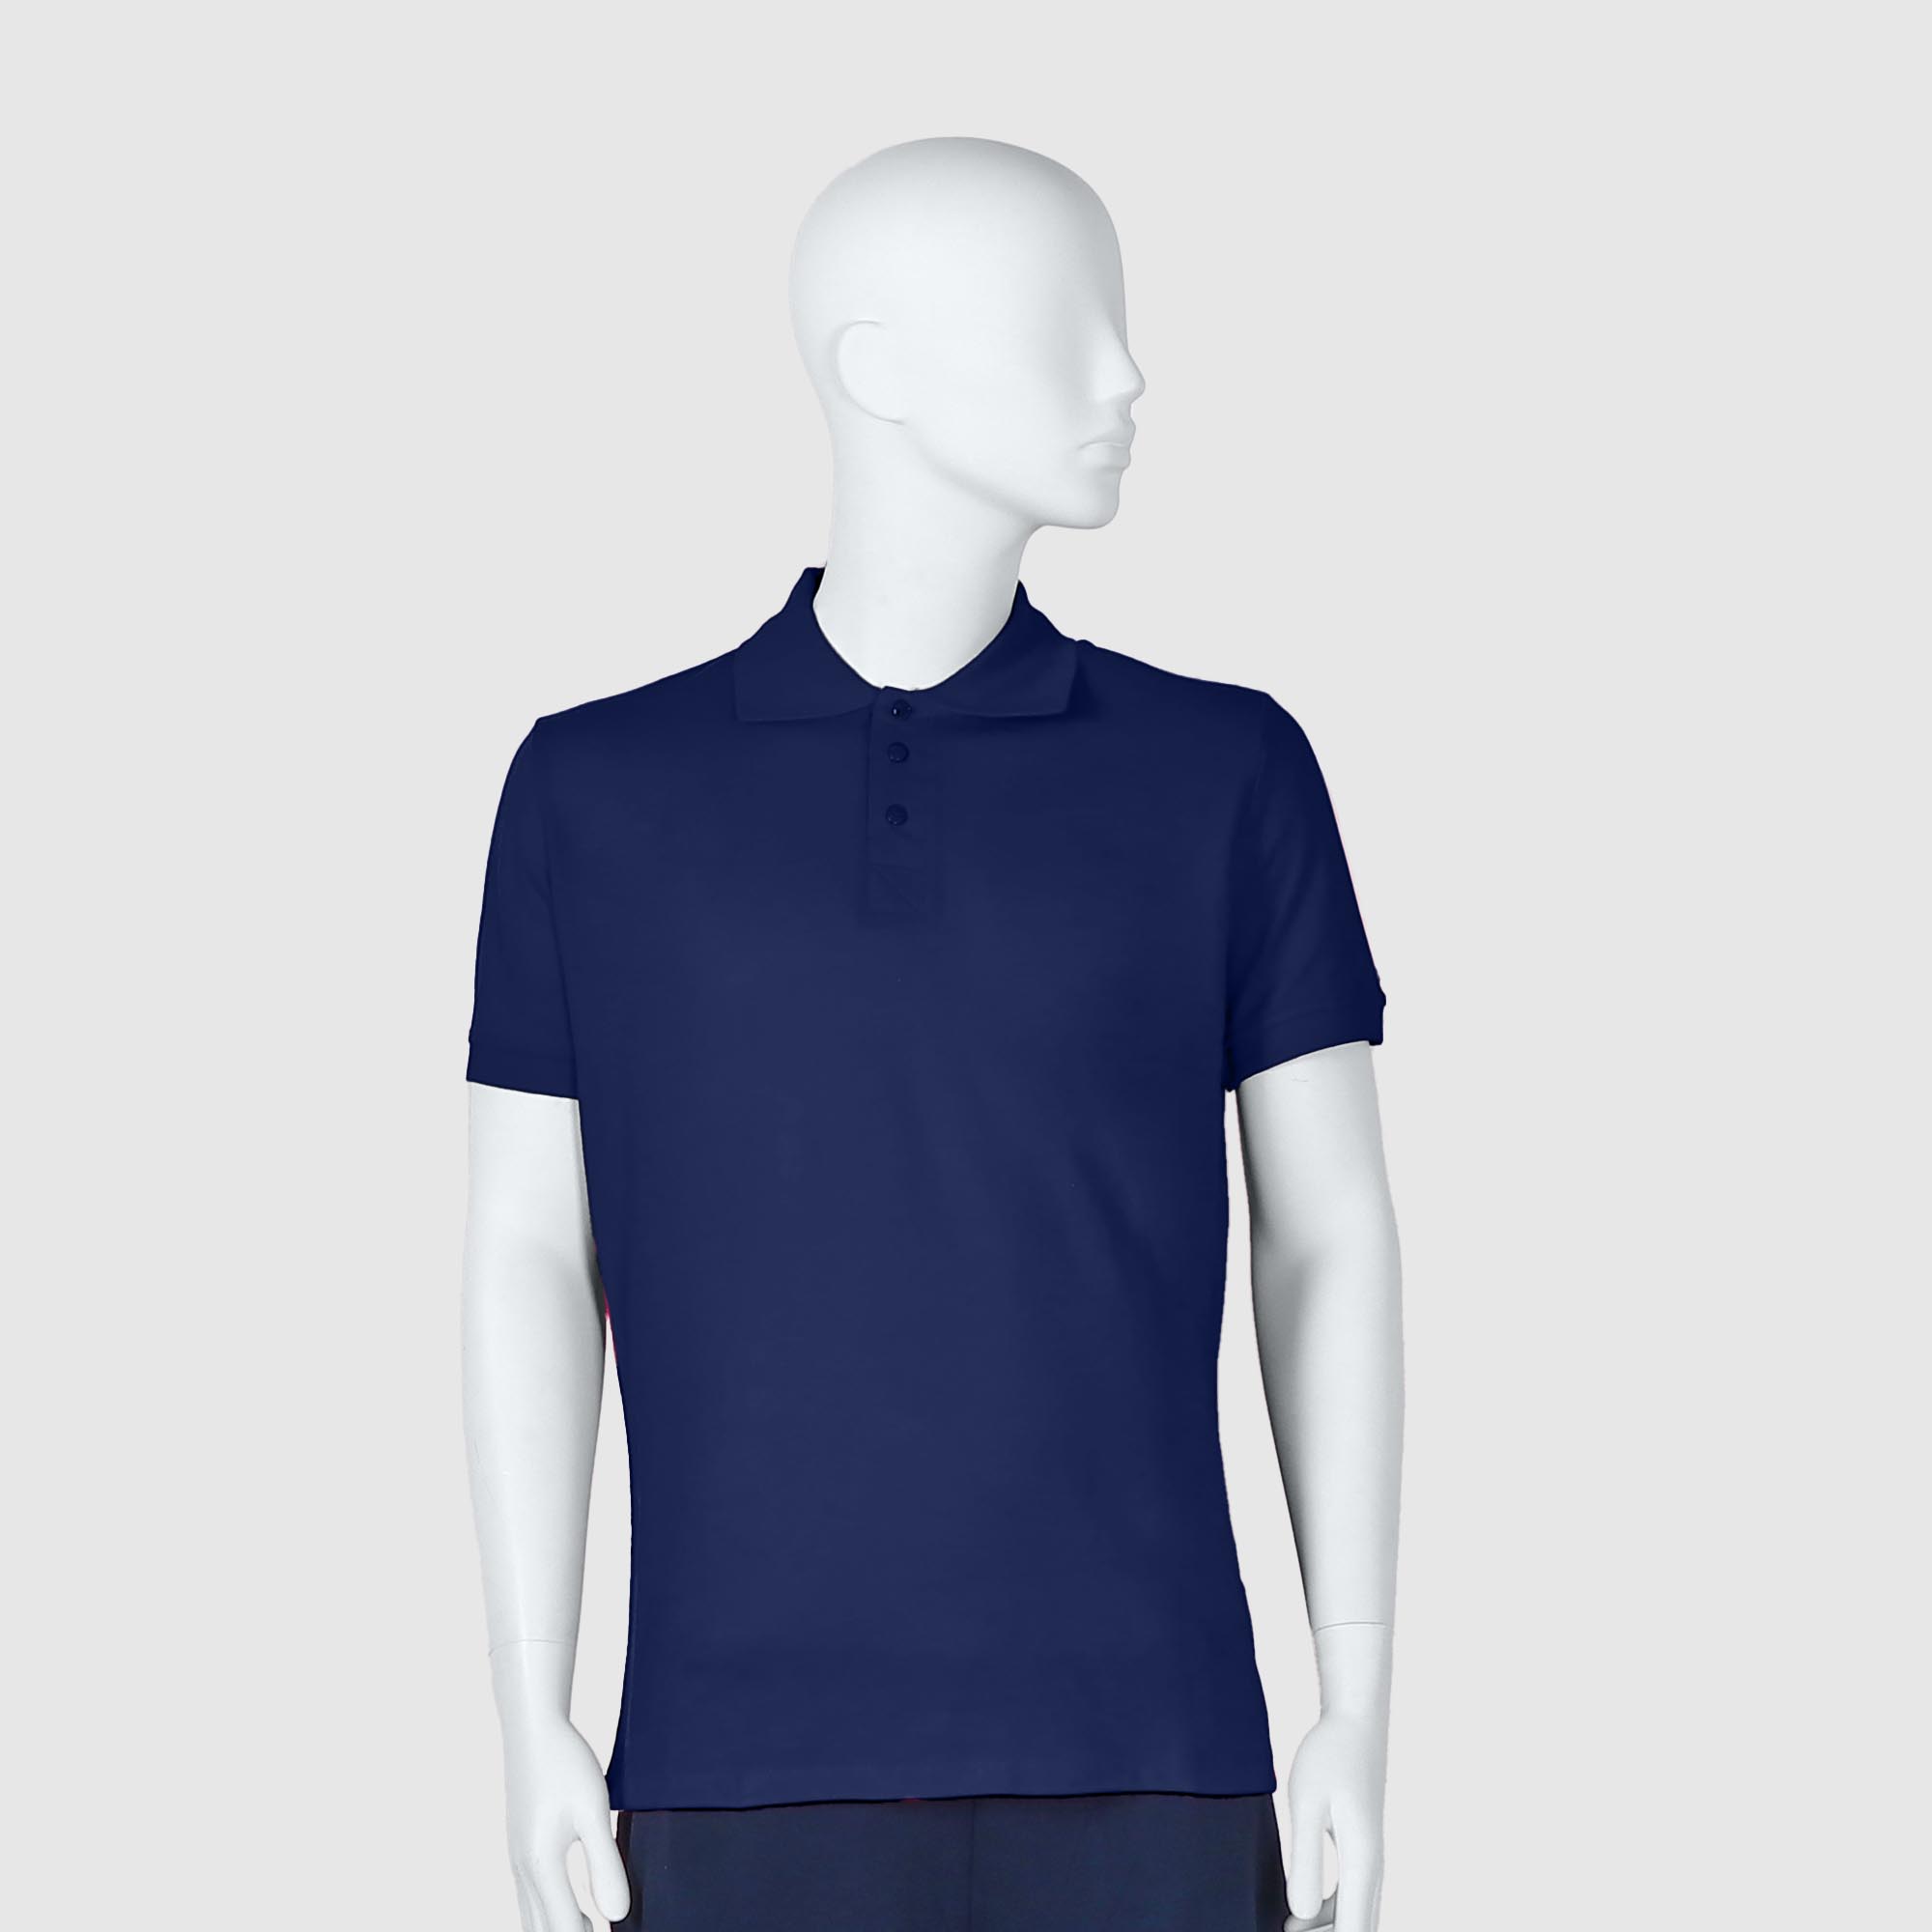 Мужская футболка-поло Diva Teks синяя (DTD-10), цвет синий, размер 54-56